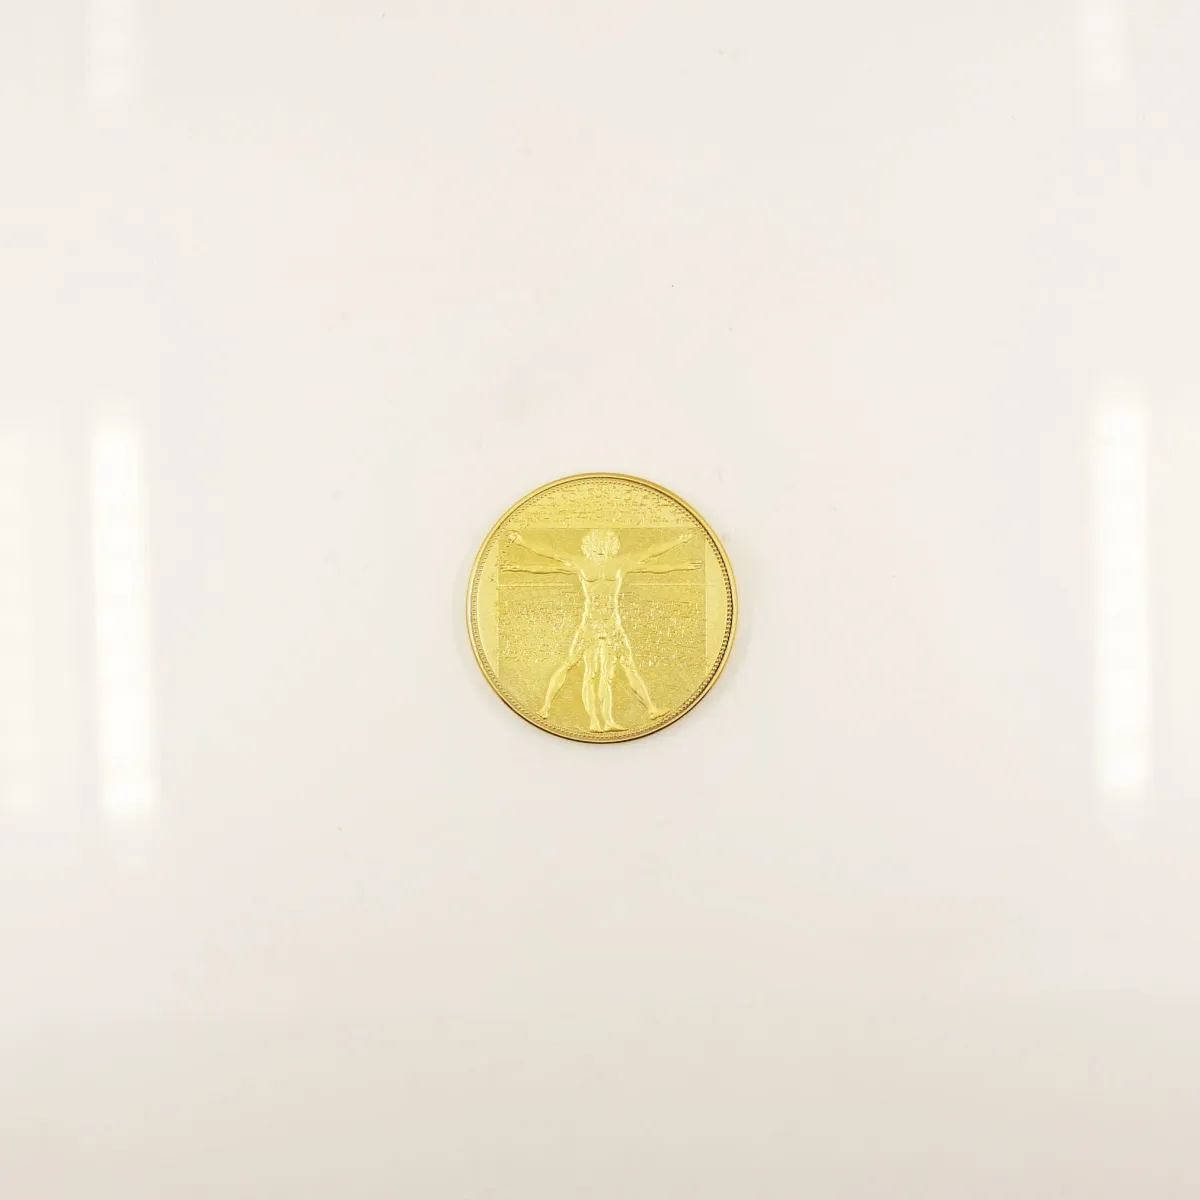 Proveedores de China custom brass cobre Placa de recuerdo monedas antiguas artesanías escultura 3D OEM logo moneda